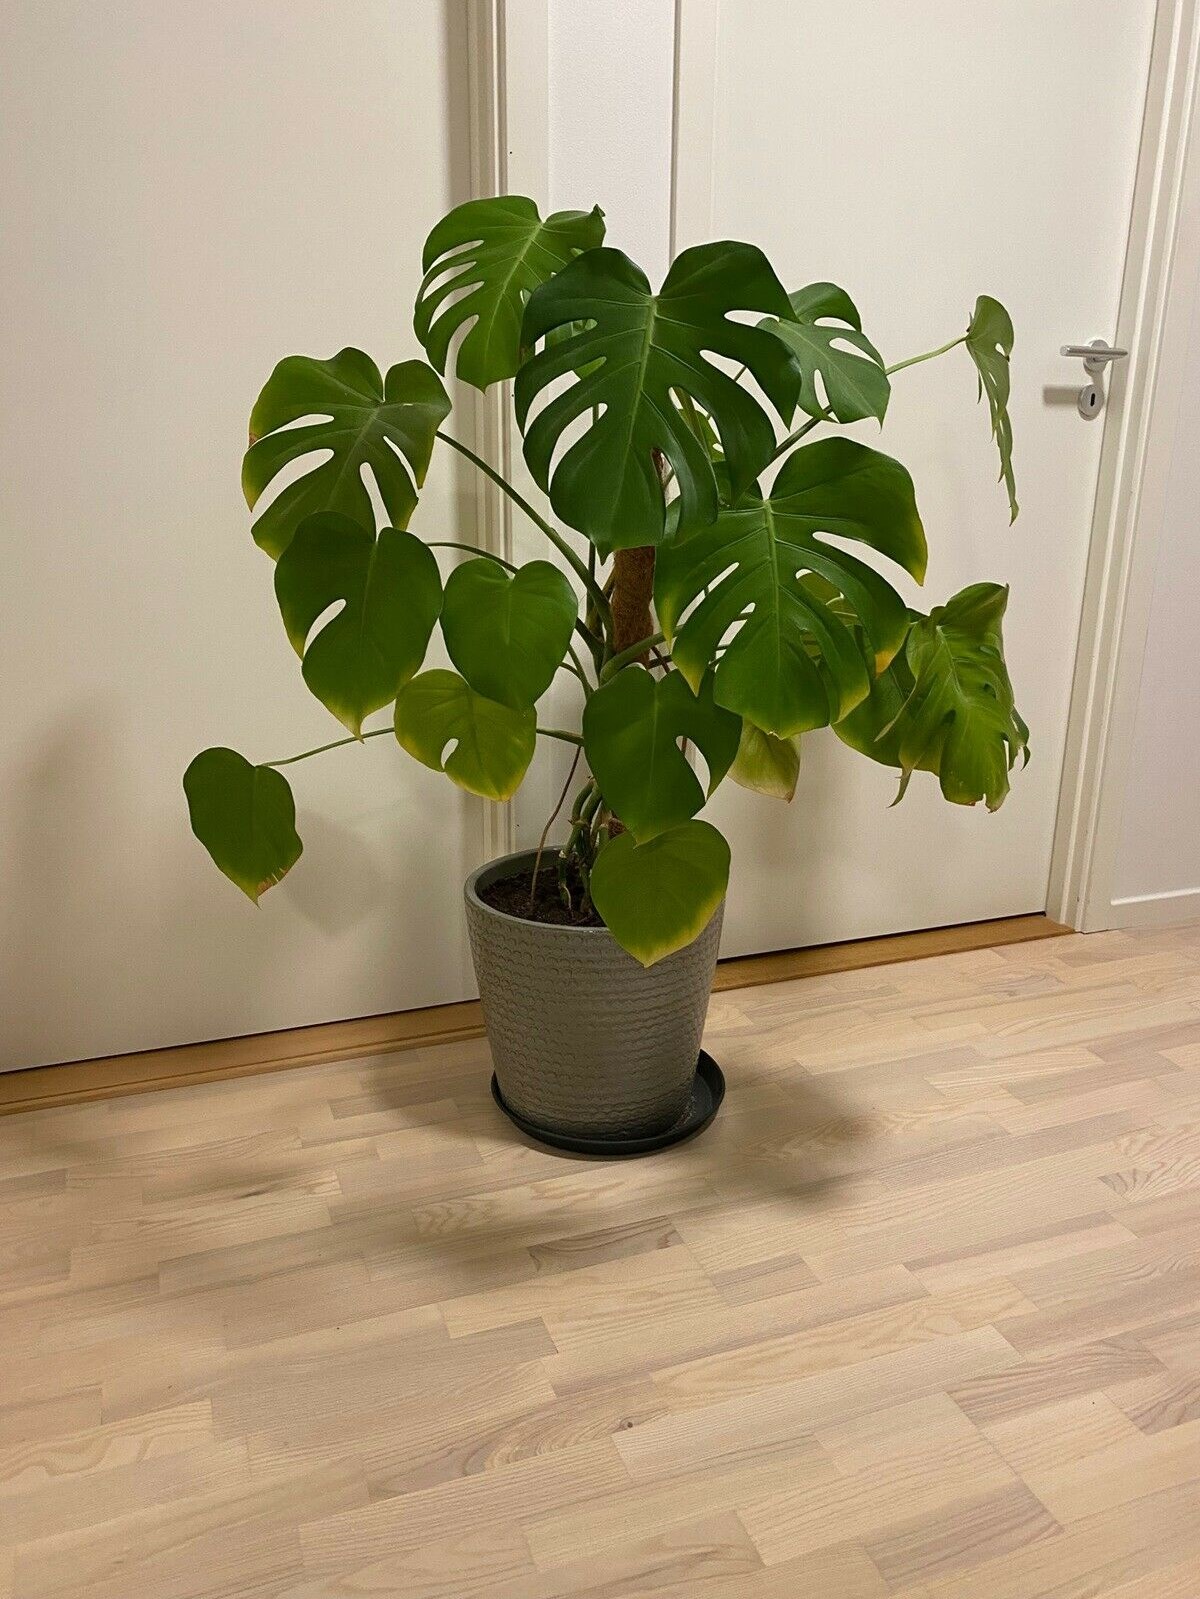 For 500 kroner kan denne ’Monstera’ blive din. Den 130 centimeter høje plante, som sælges med potte, kan du hente hos Mathilde i Glostrup.